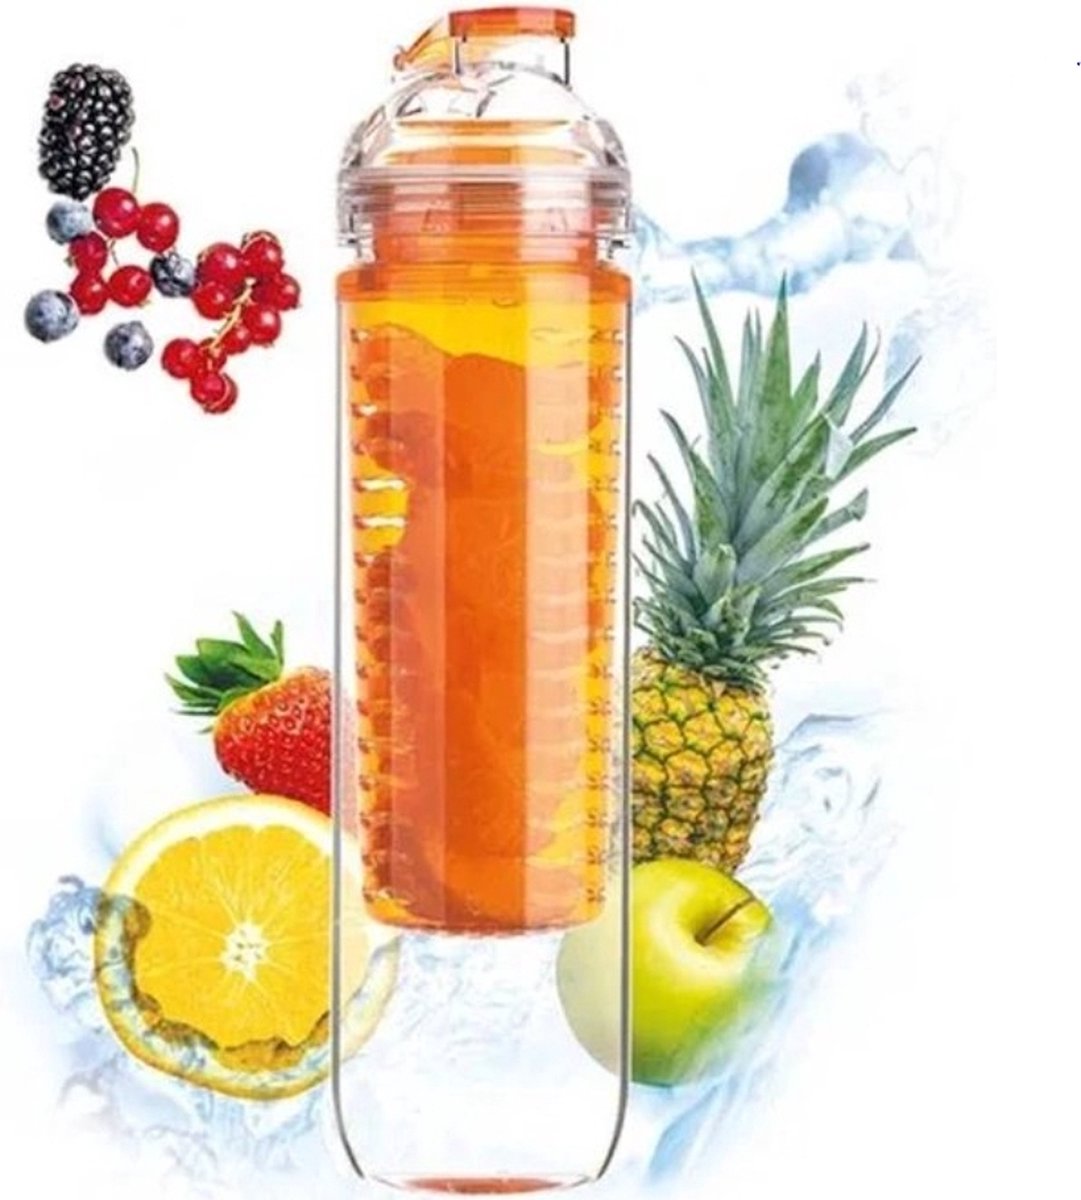 Ariko drinkfles met fruit infuser - oranje - 800 ml - bidon - waterfles - fruit filter